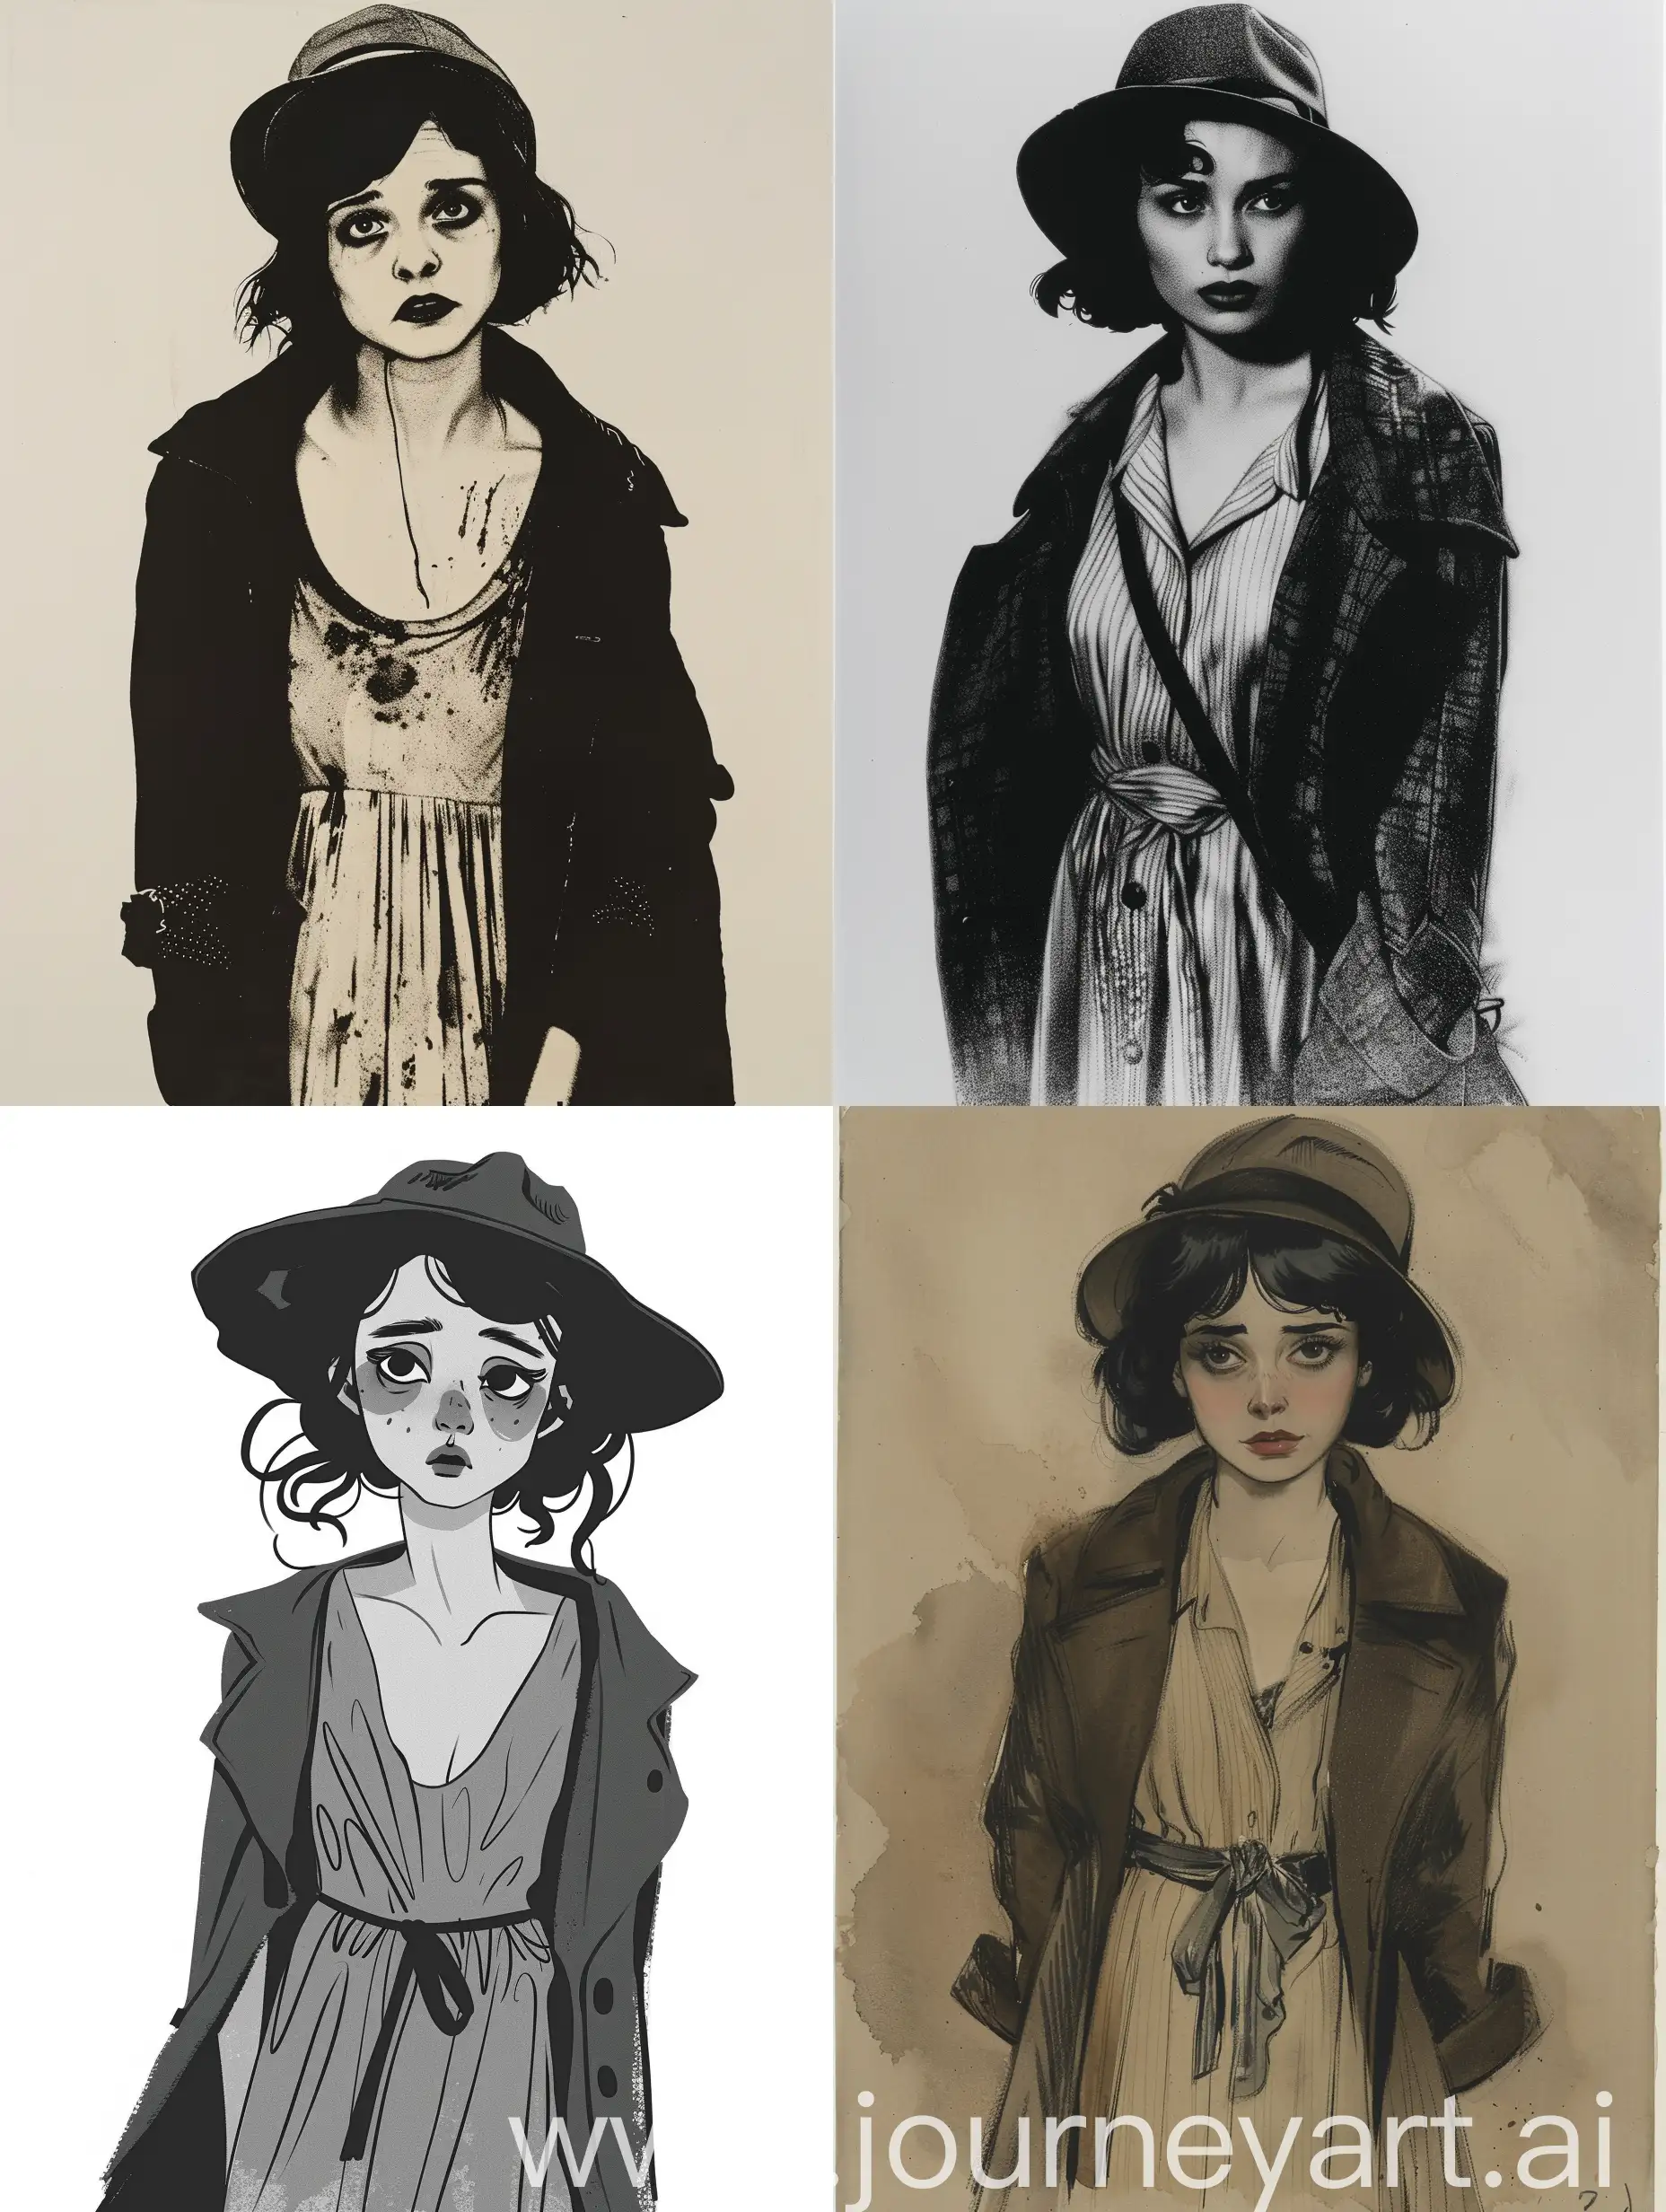 Женщина, тревожный взгляд, черные волосы, грустный взгляд, маленькие губы, одета в платье, накинуто пальто, шляпа.